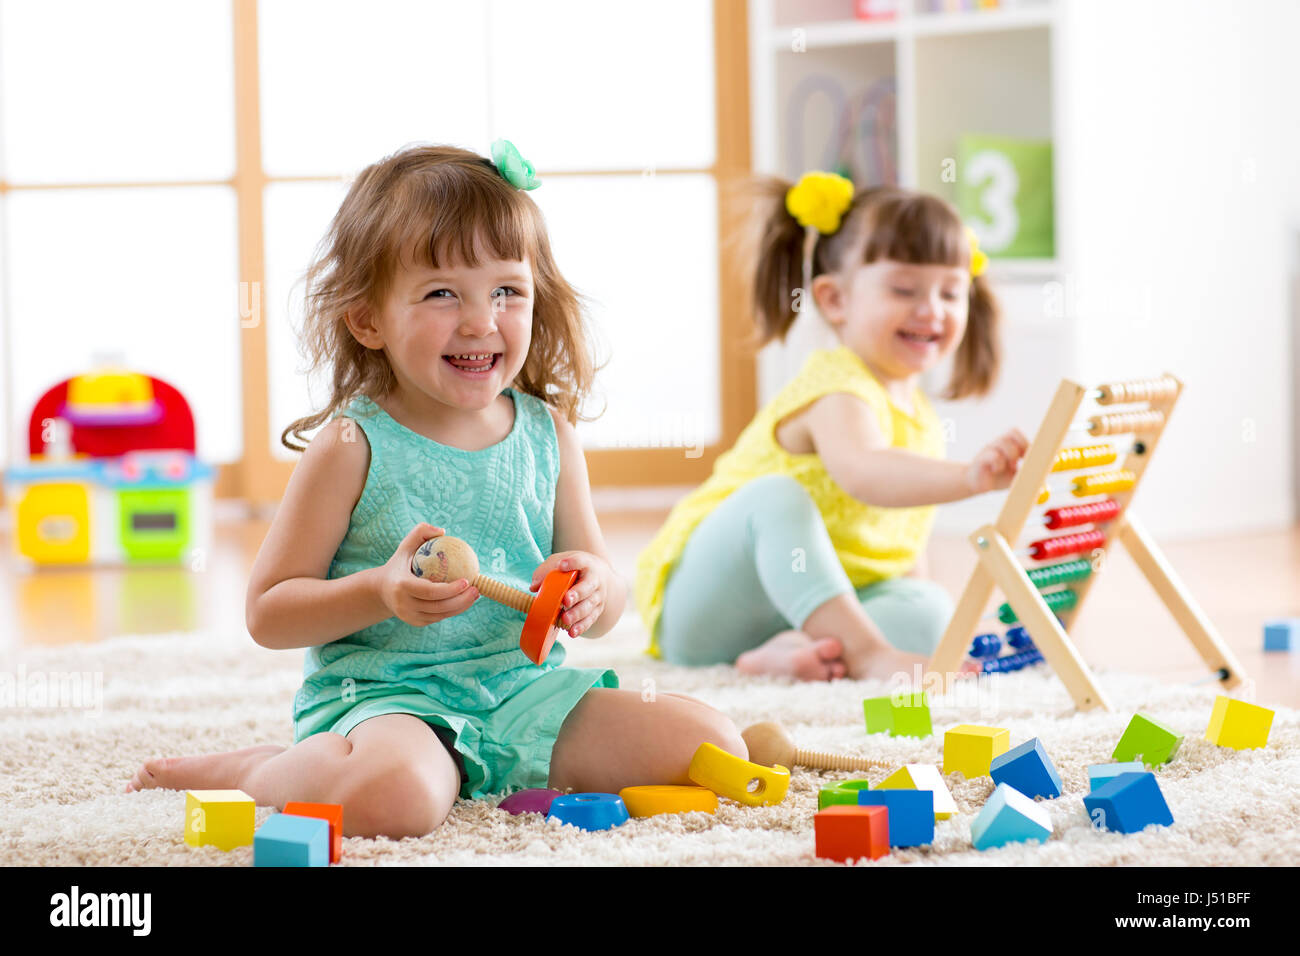 Ci sono bambini che giocano con abacus e costruttore di giocattoli sul pavimento a scuola o a casa. Apprendimento precoce concetti. Foto Stock